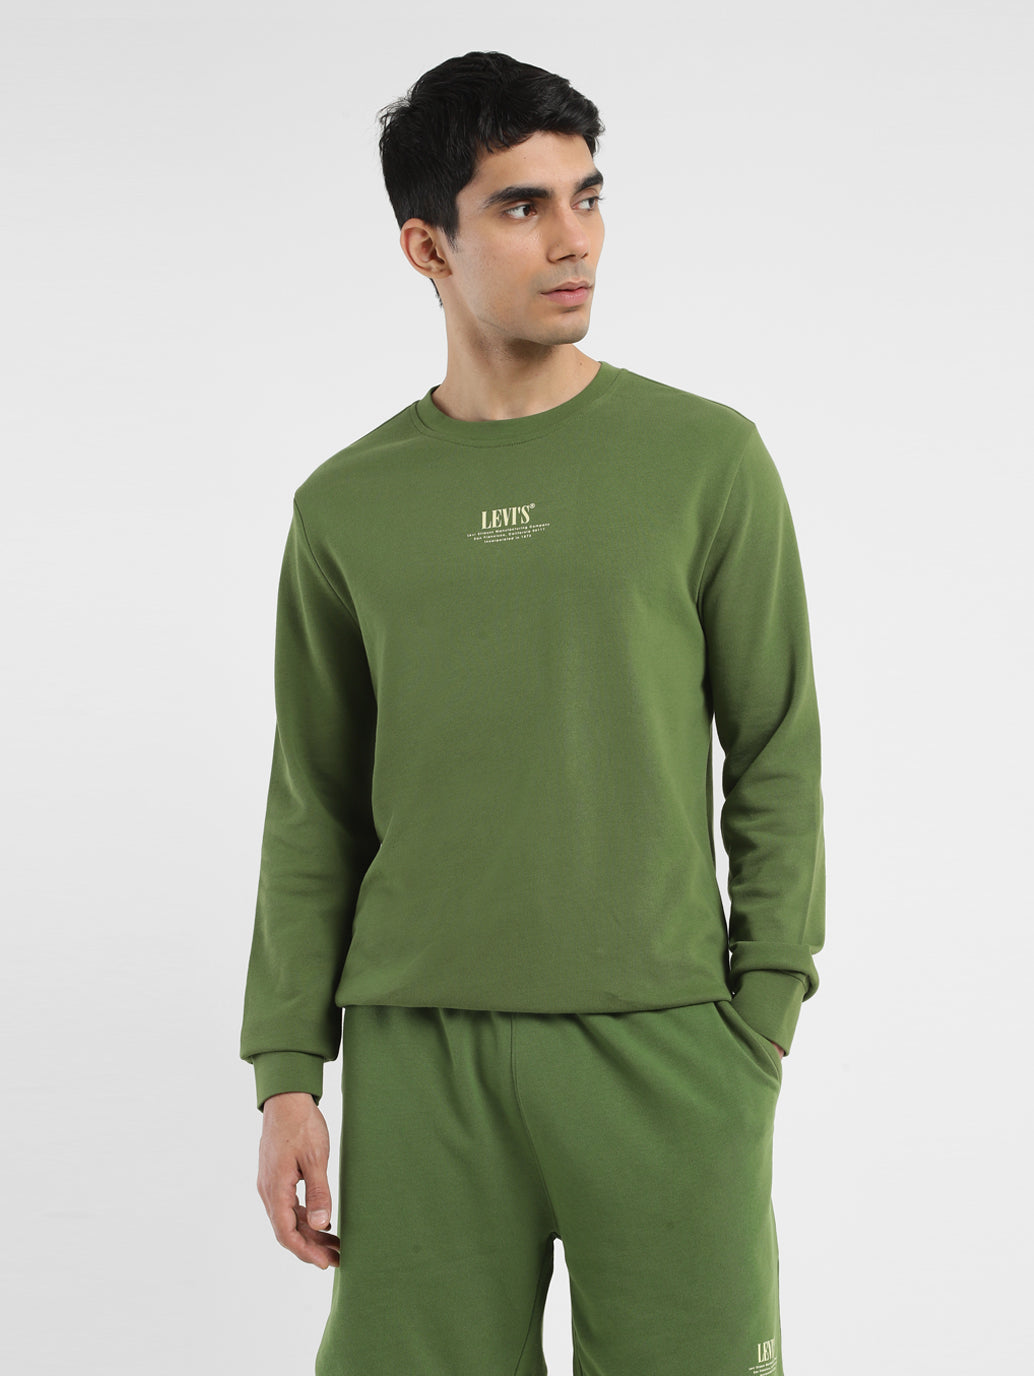 Men's Solid Green Crew Neck Sweatshirt